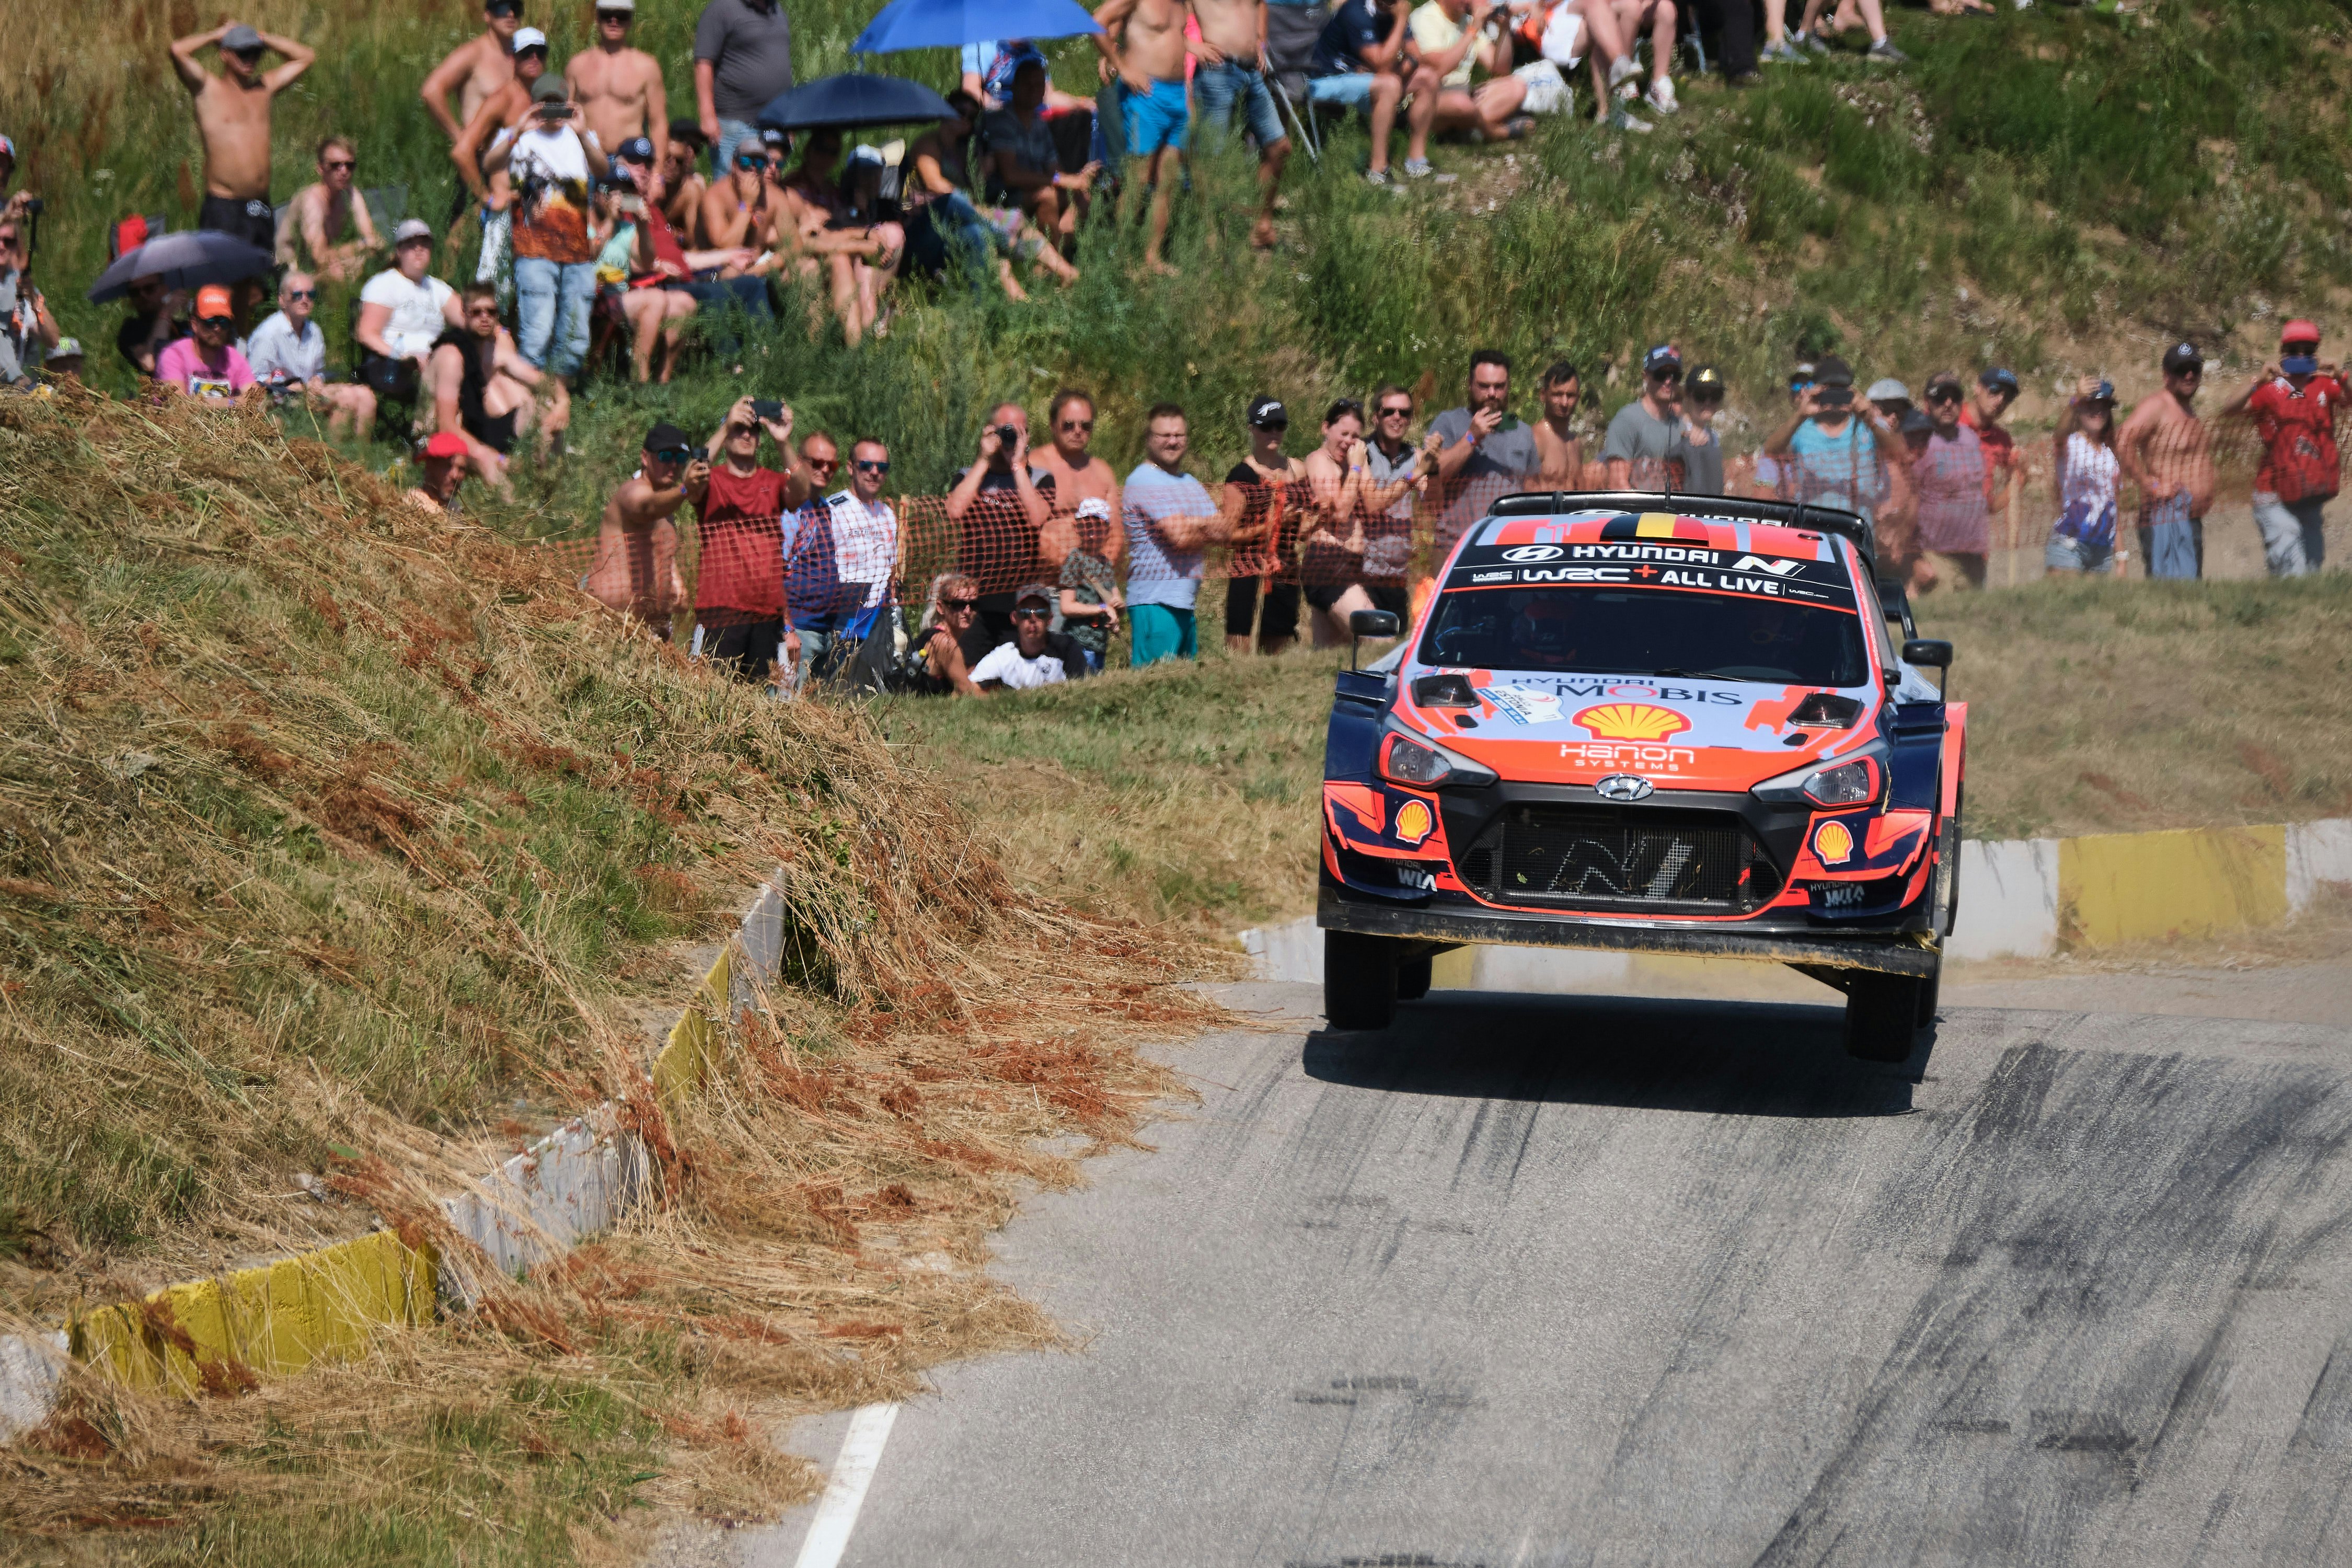 Thierry Neuville - Rallye WRC : Vidéos, photos, news..